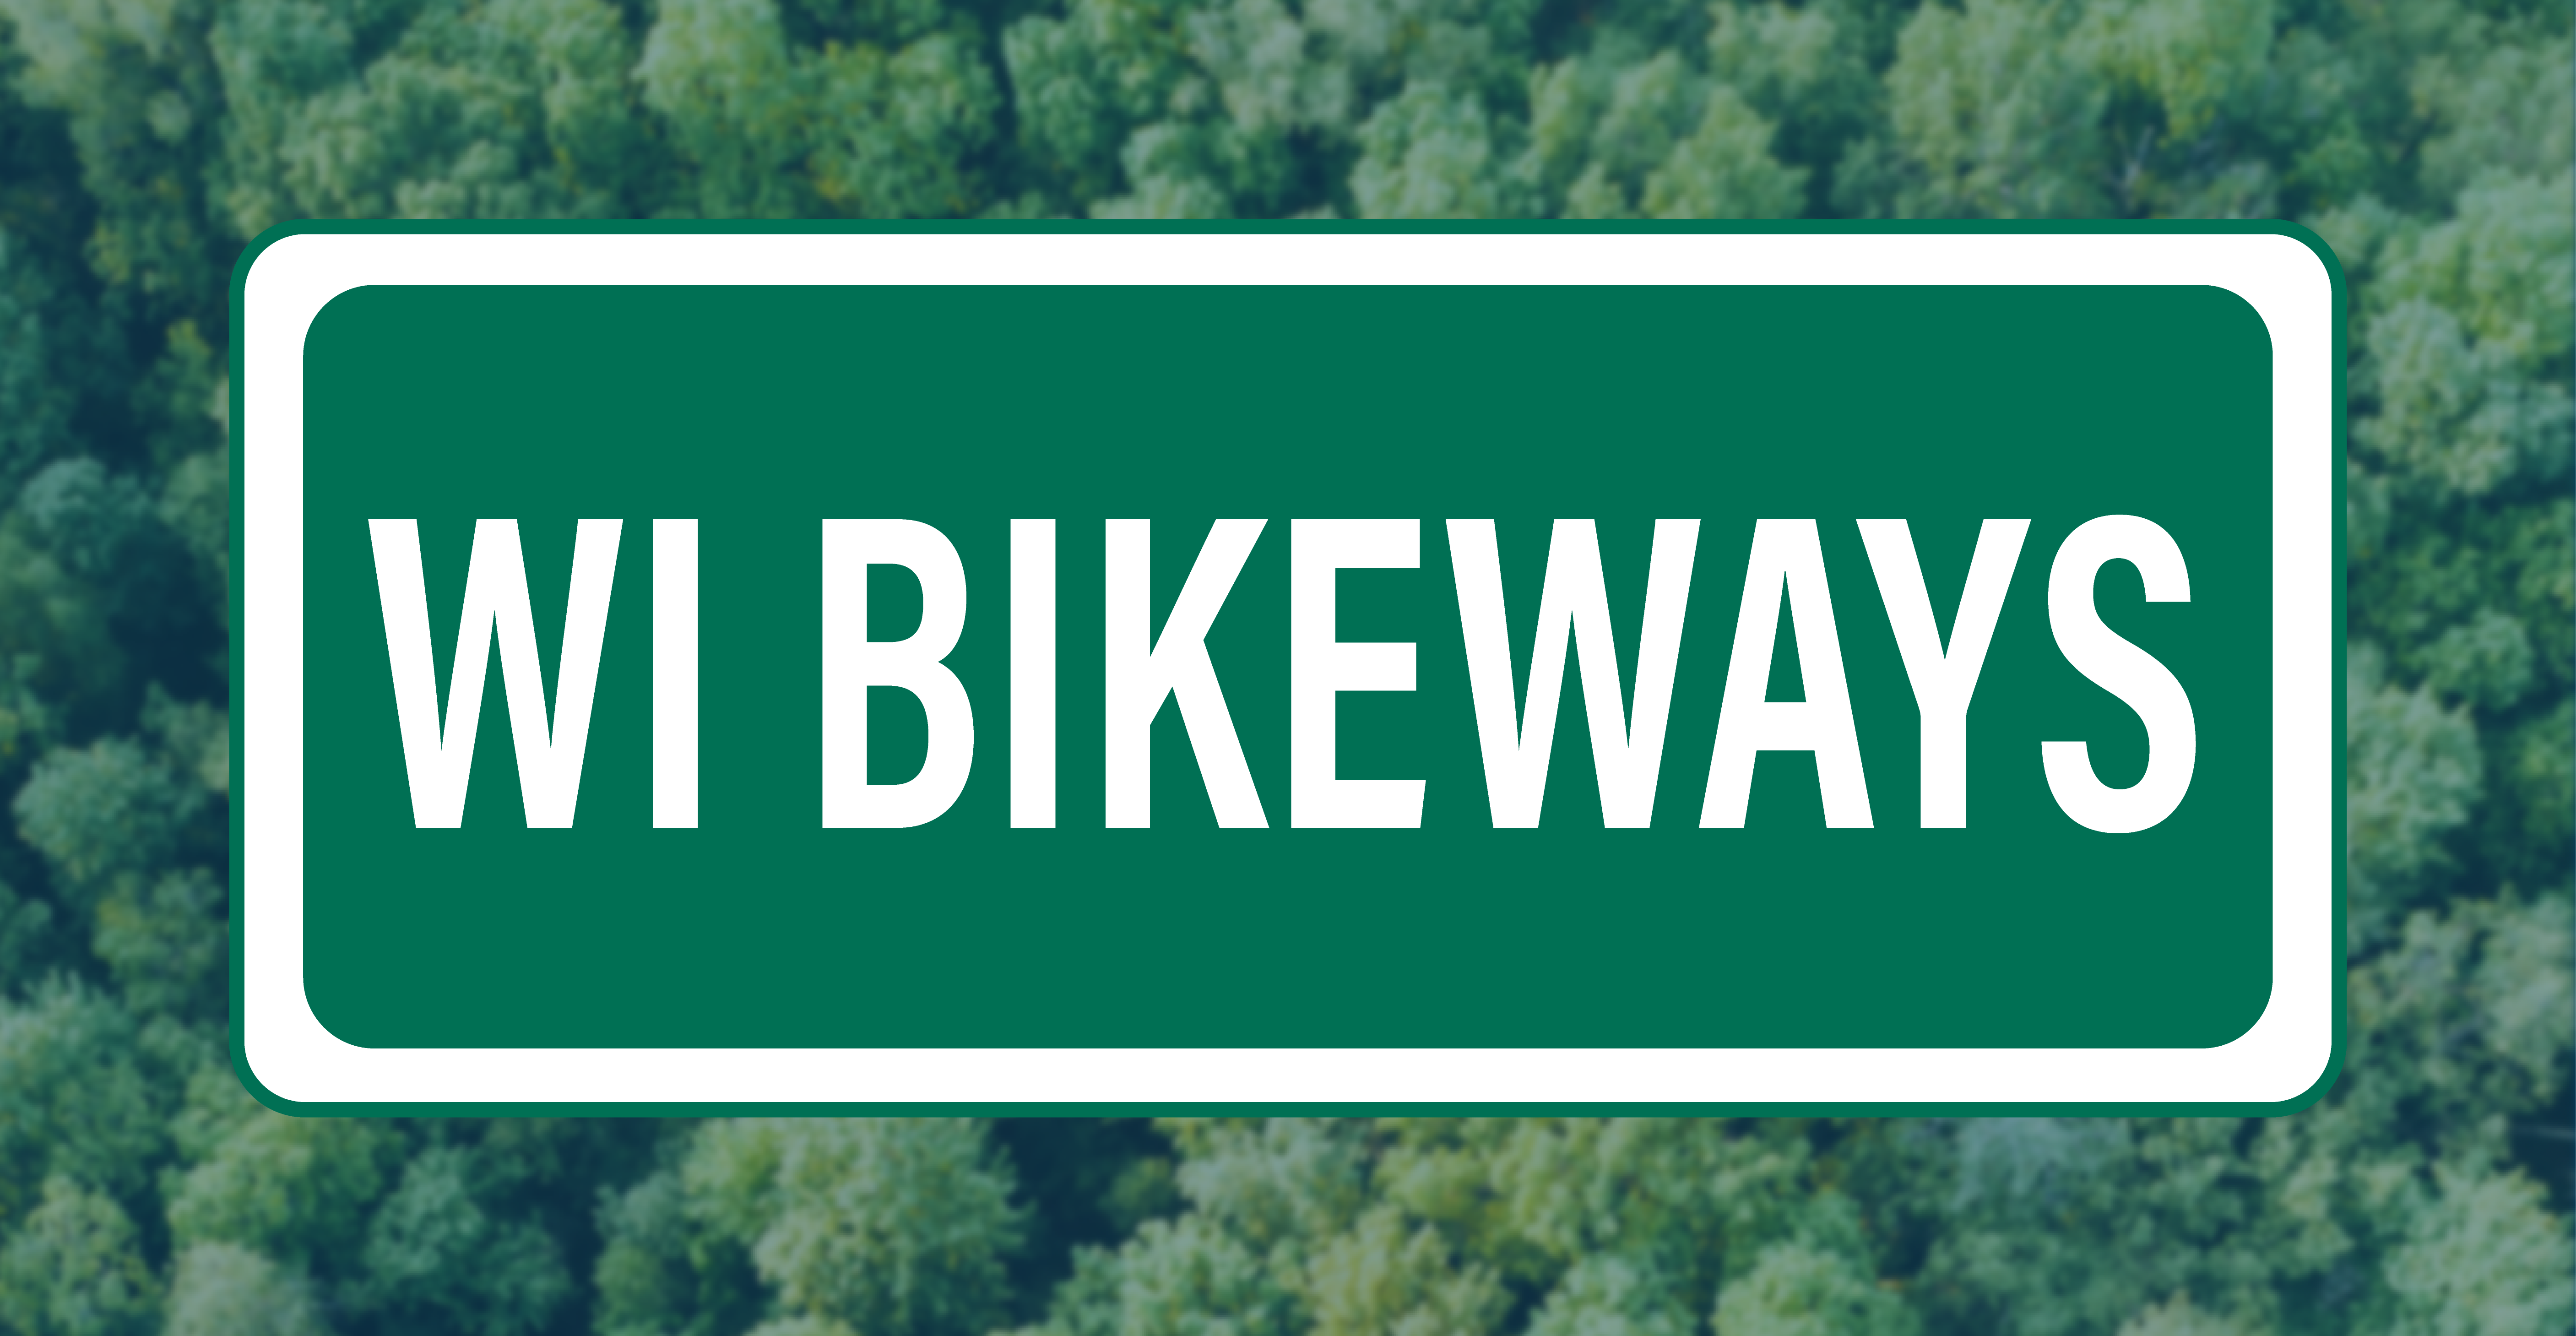 Wisconsin Bike Fed Releases Wisconsin Bikeways Report